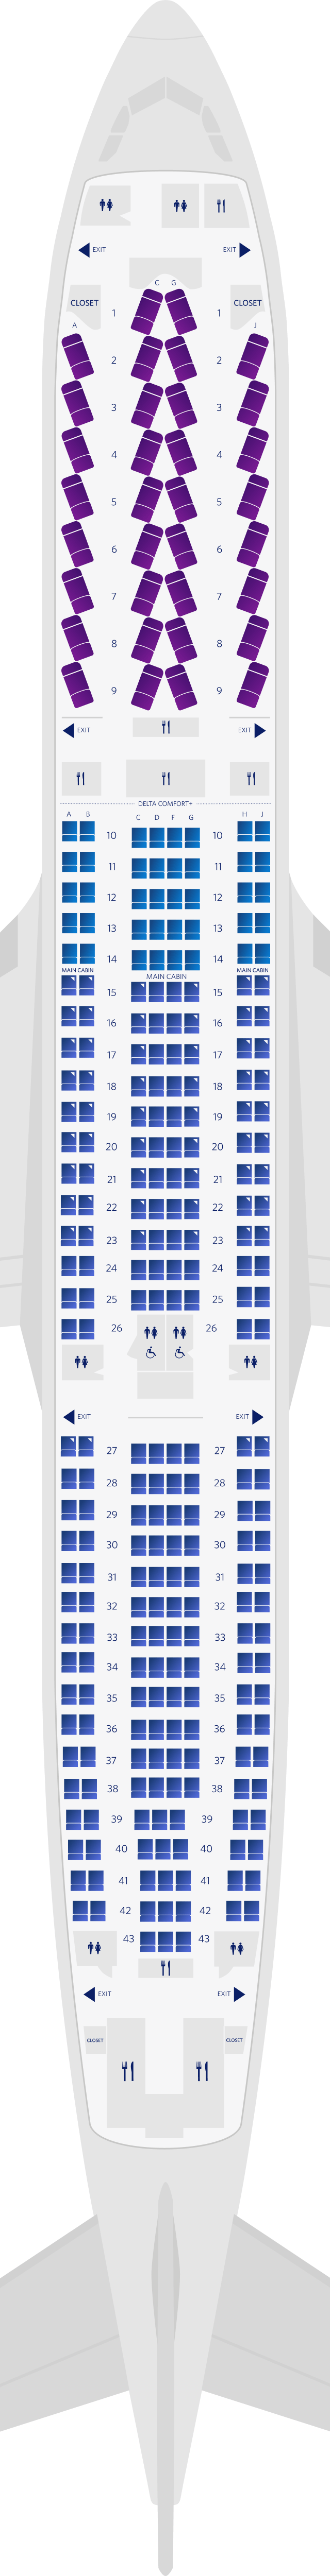 에어버스 A300-300 3-객실 좌석 배치도(333)